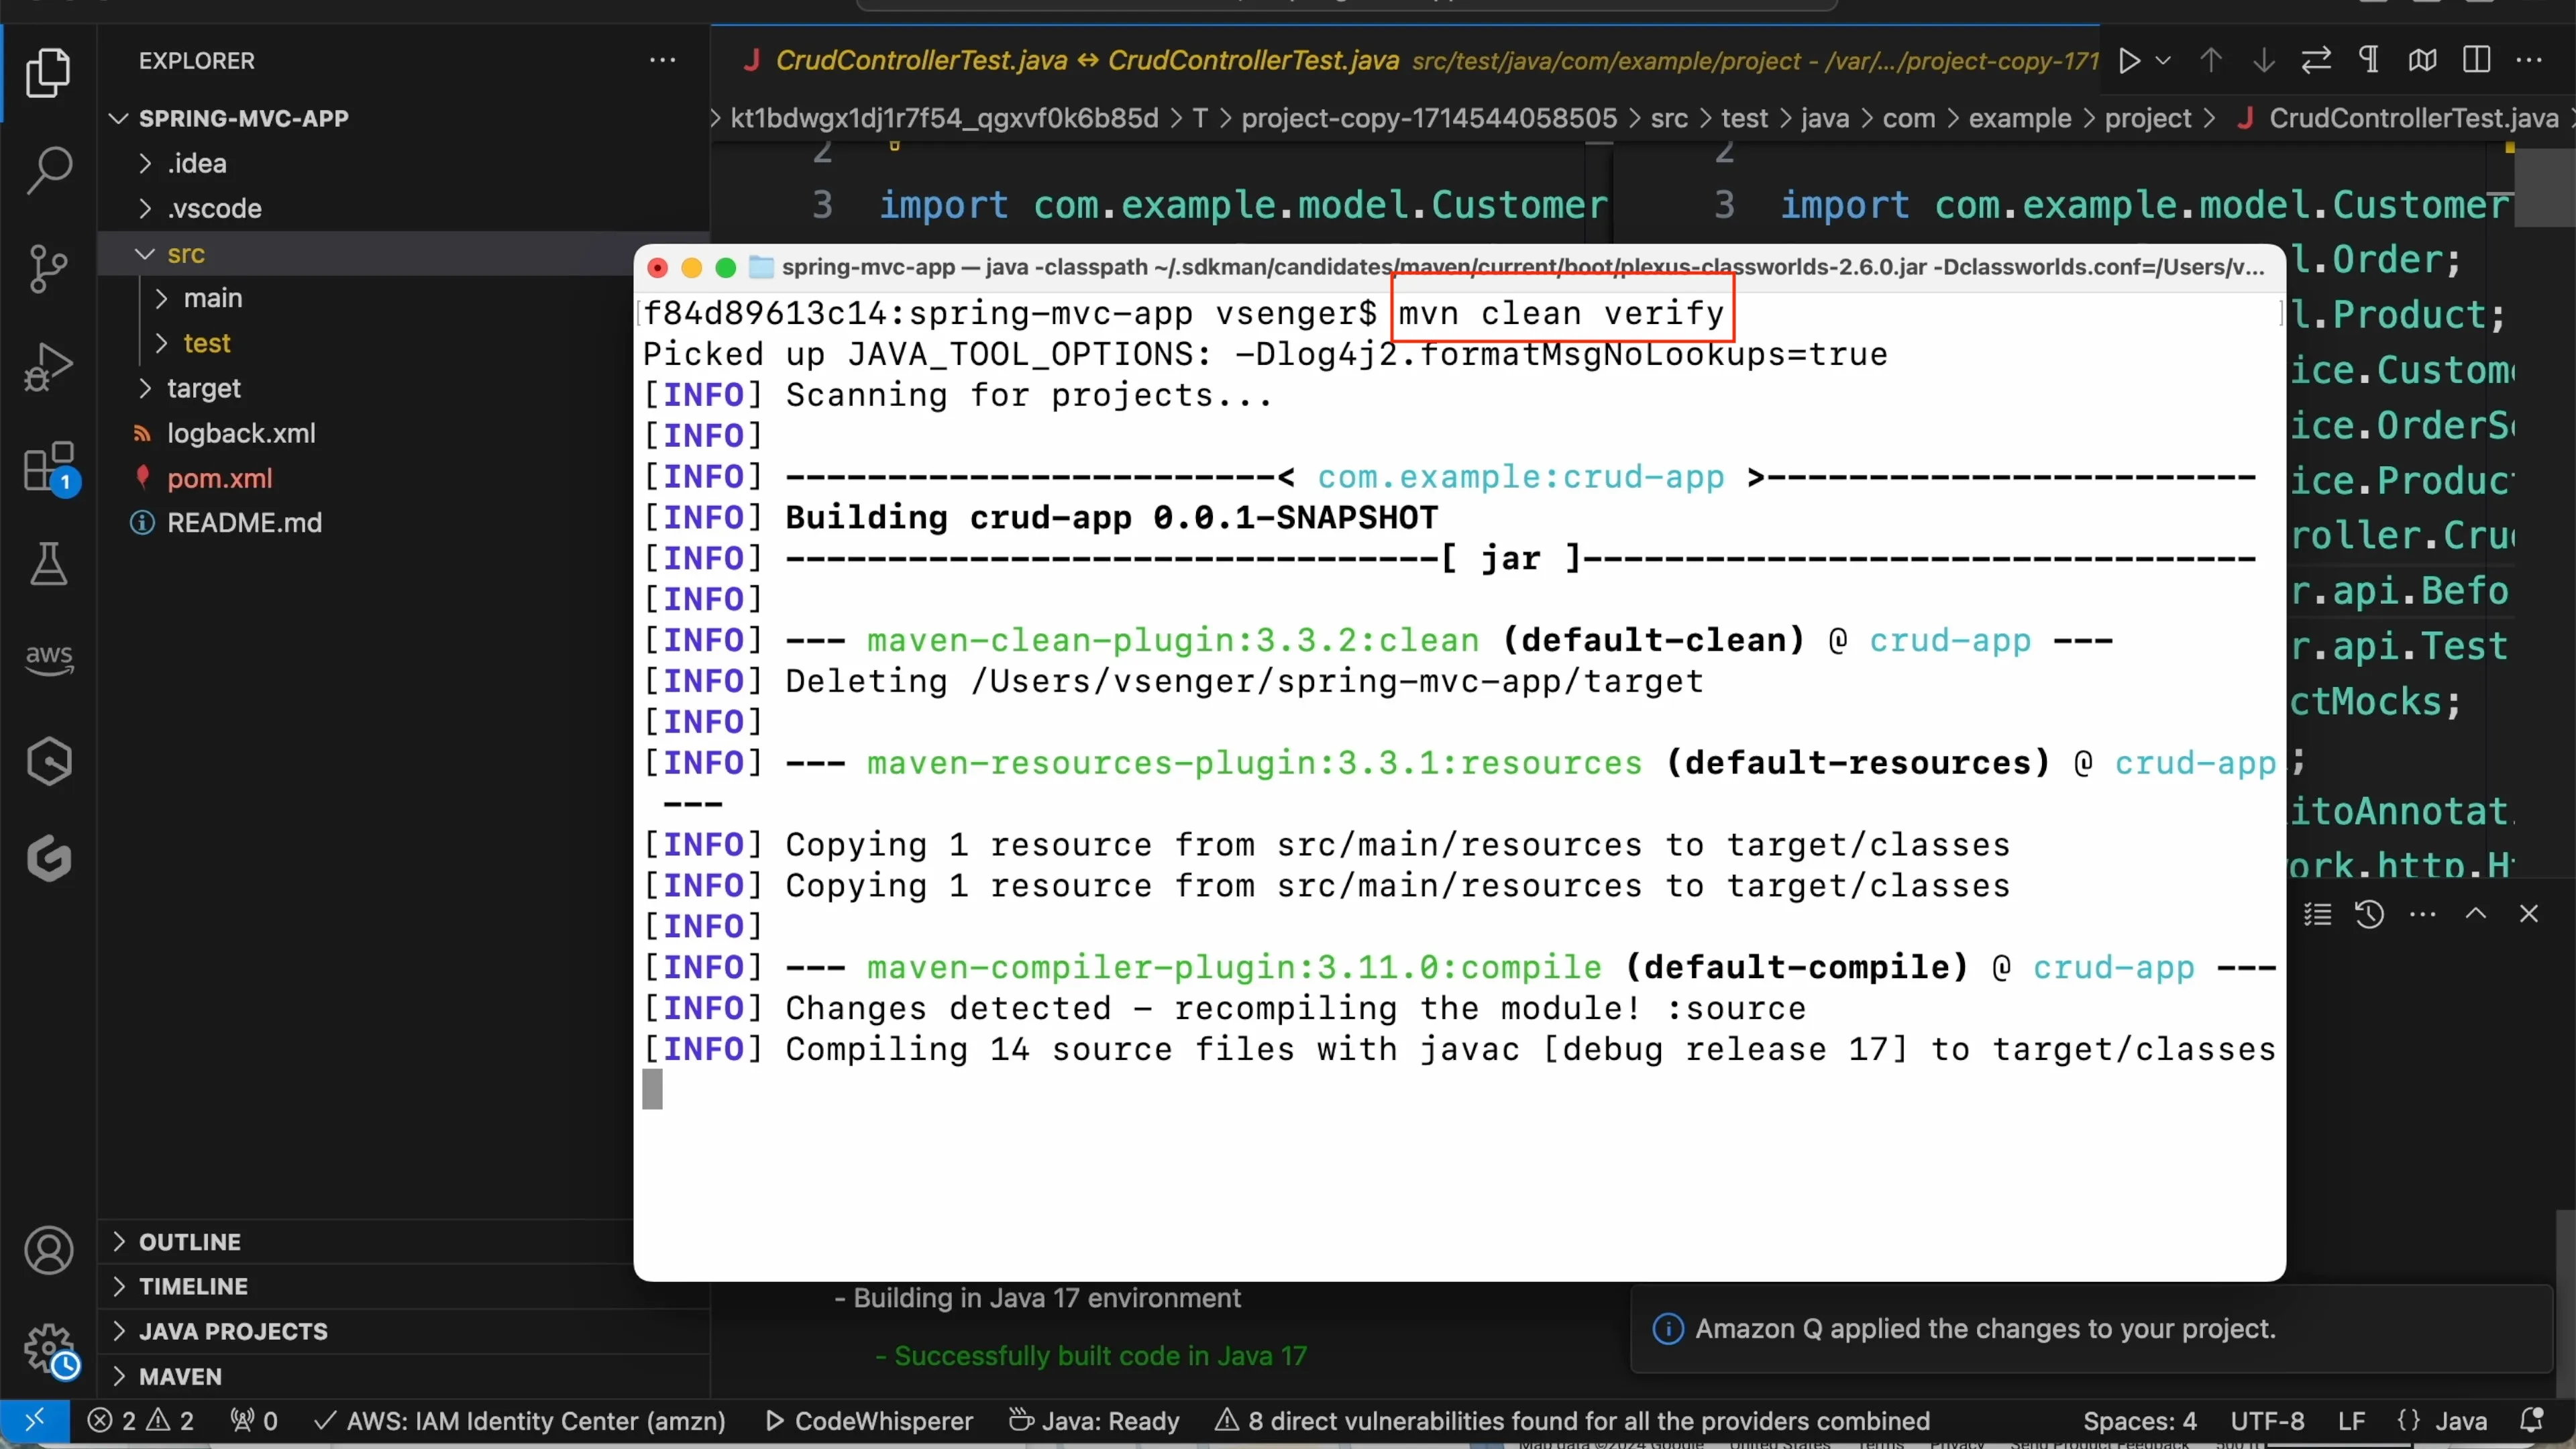 screenshot of terminal running mvn clean verify command